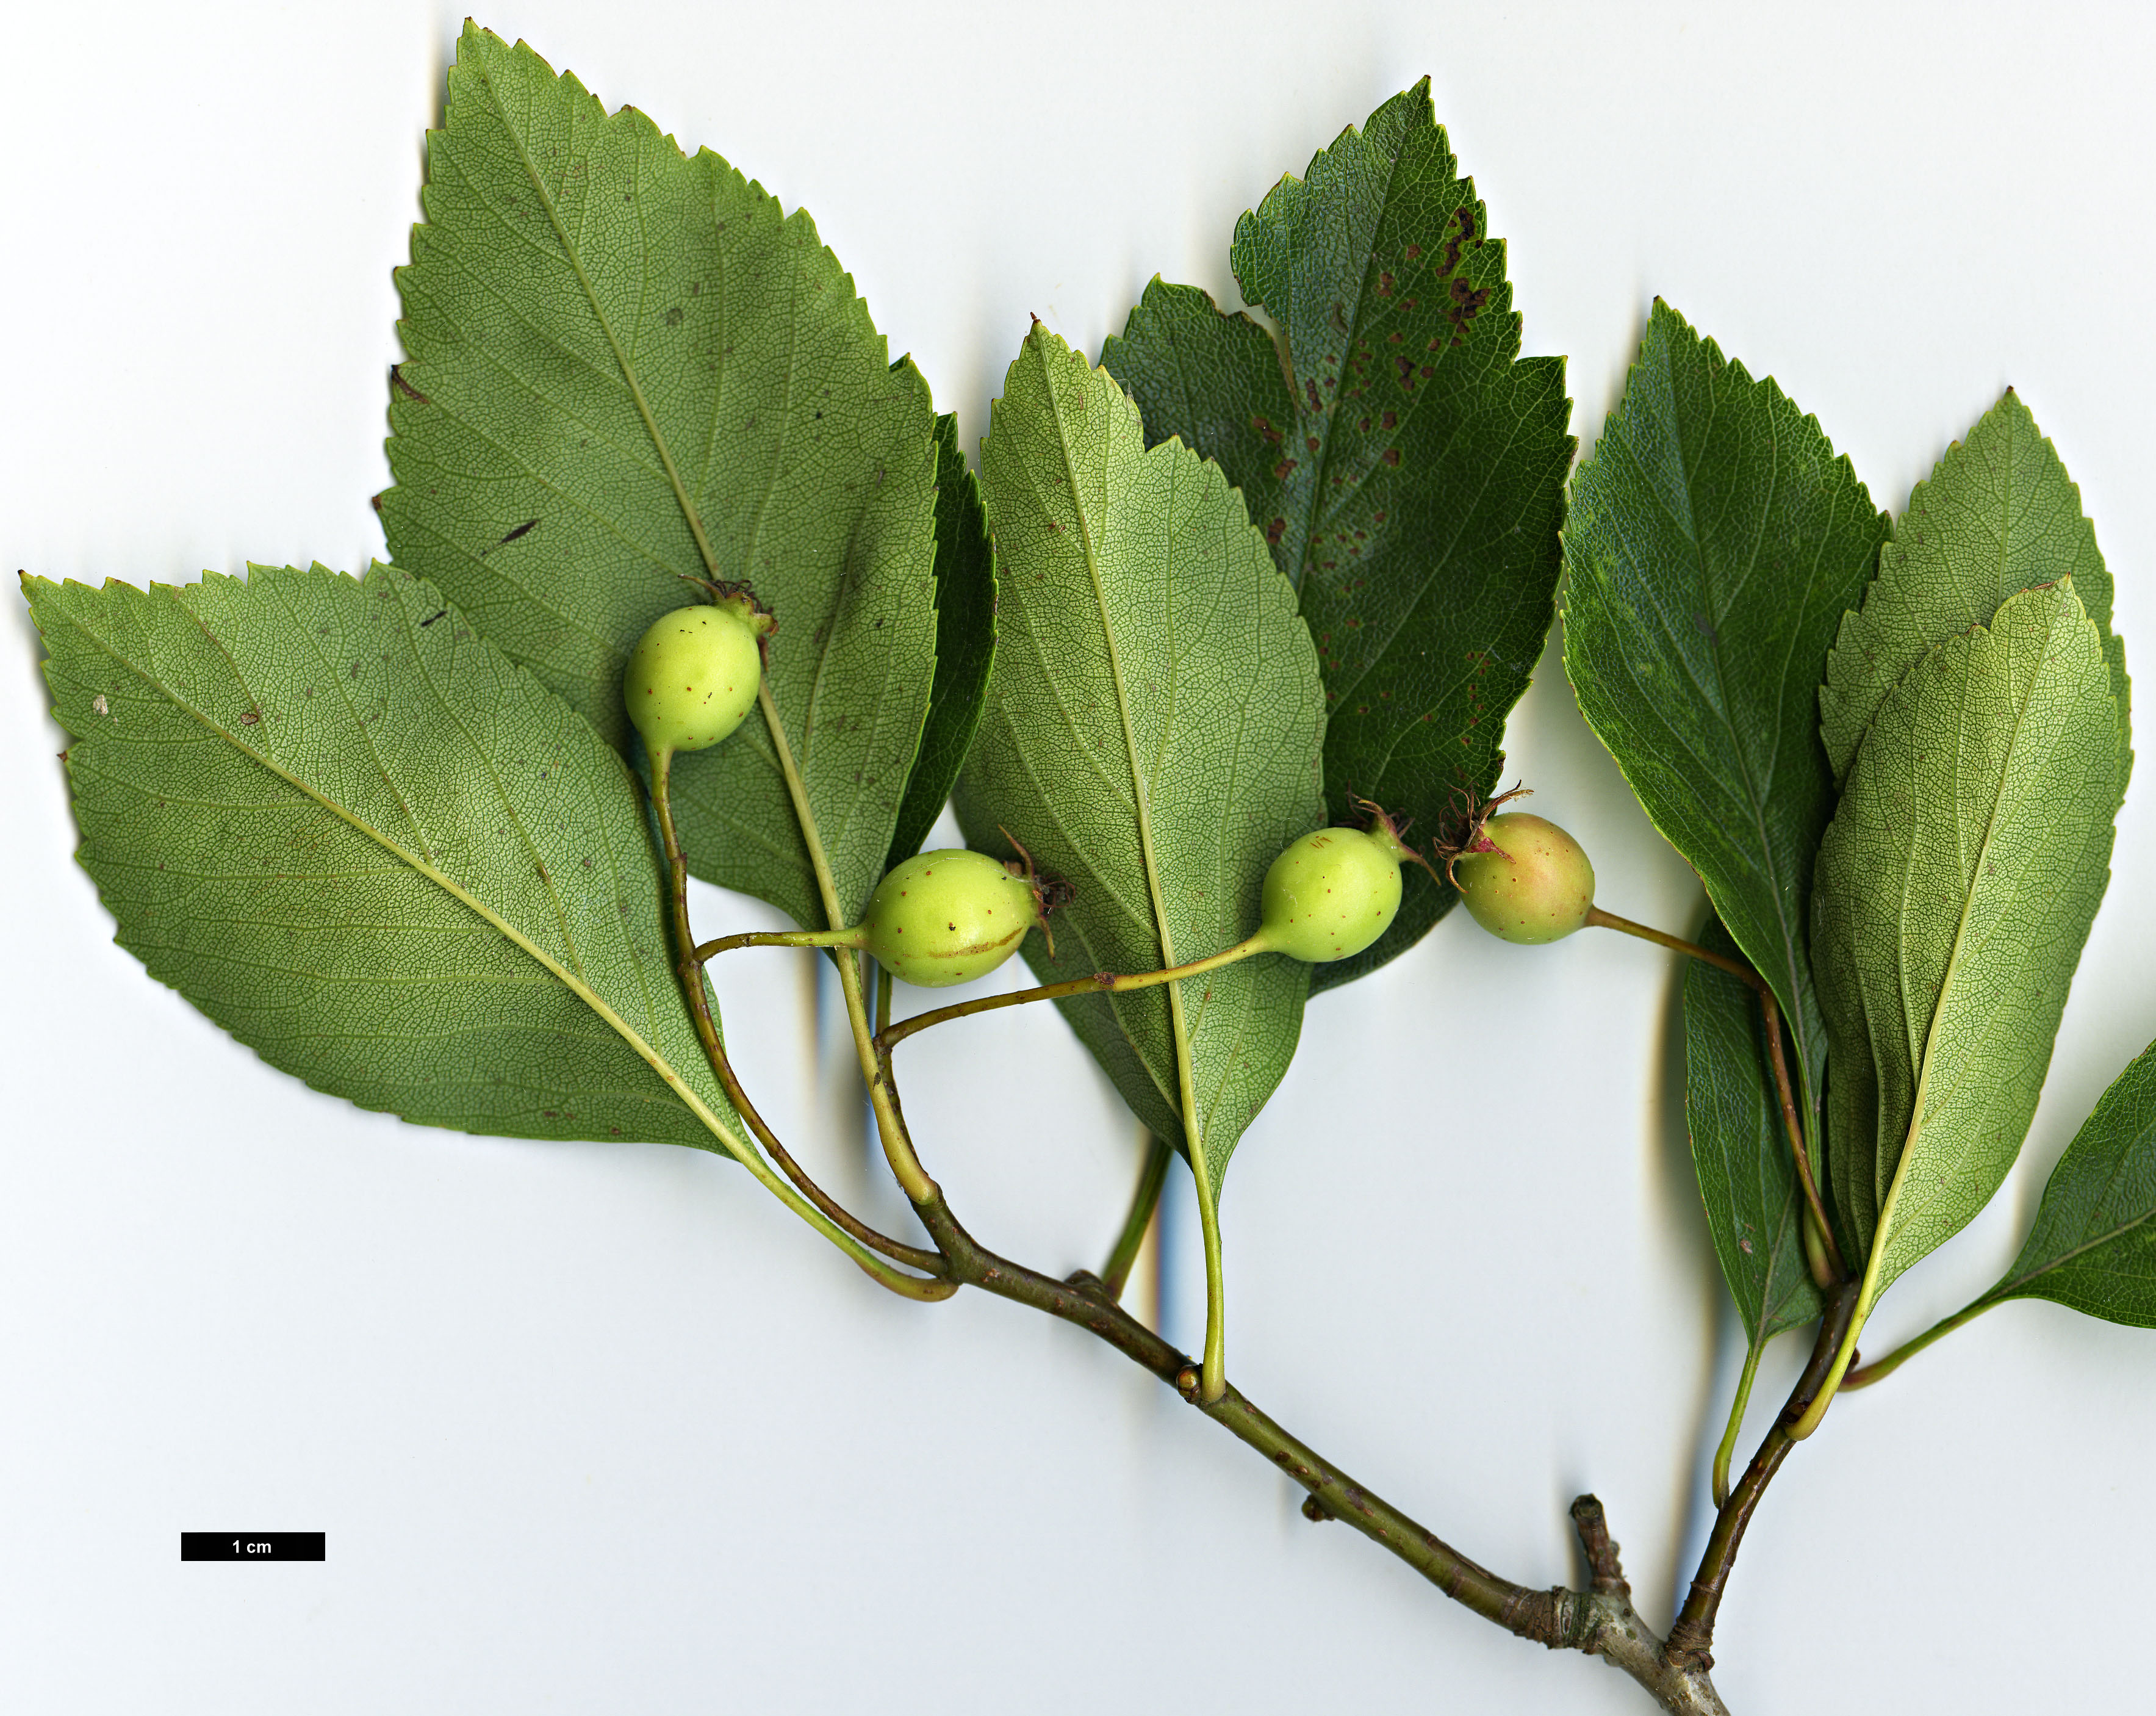 High resolution image: Family: Rosaceae - Genus: Crataegus - Taxon: crus-galli